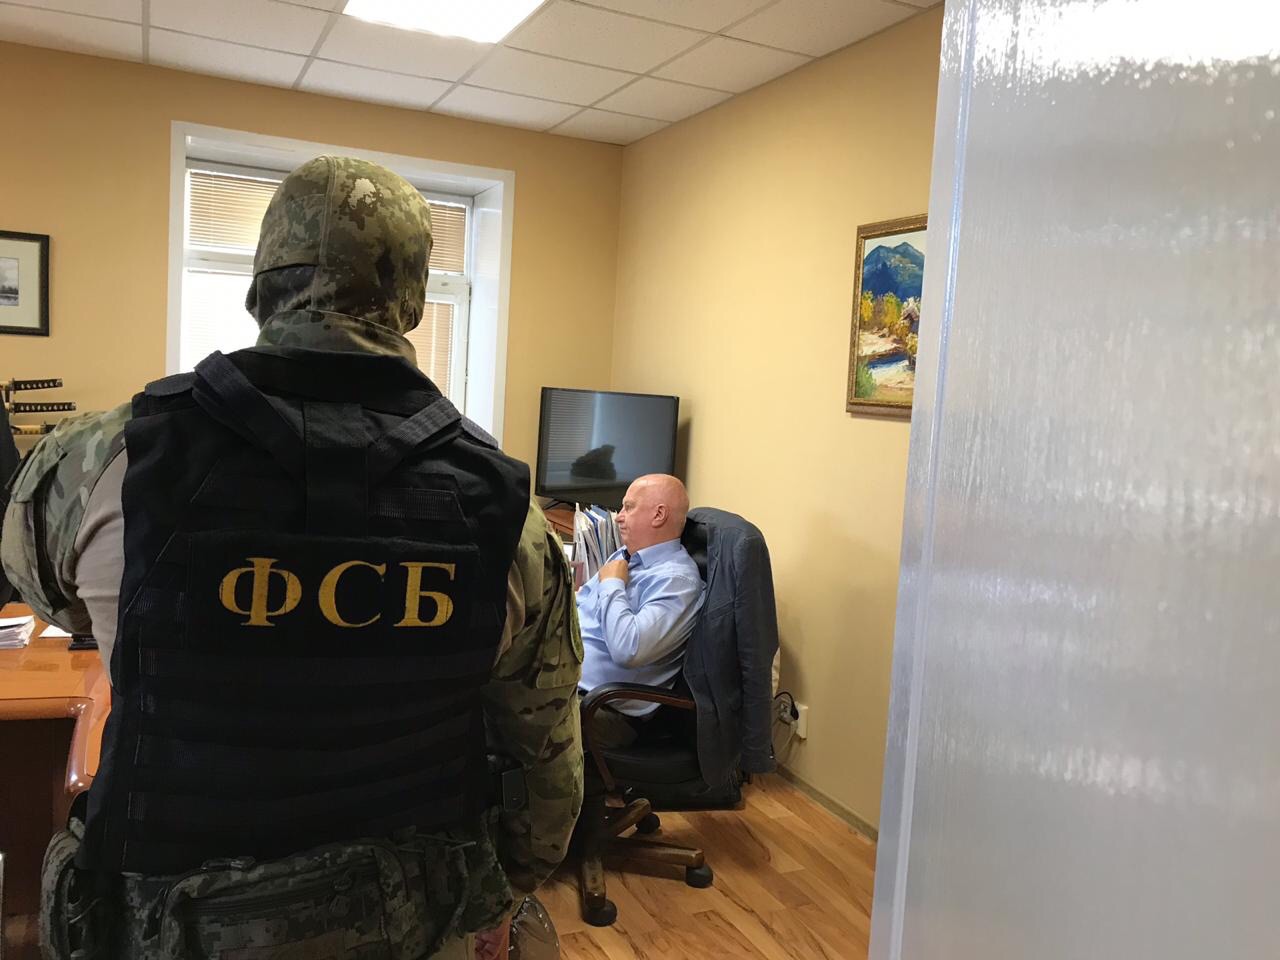 Задержали в кабинете: ФСБ взяла бизнесмена, подозреваемого в хищении сотен миллионов из бюджета